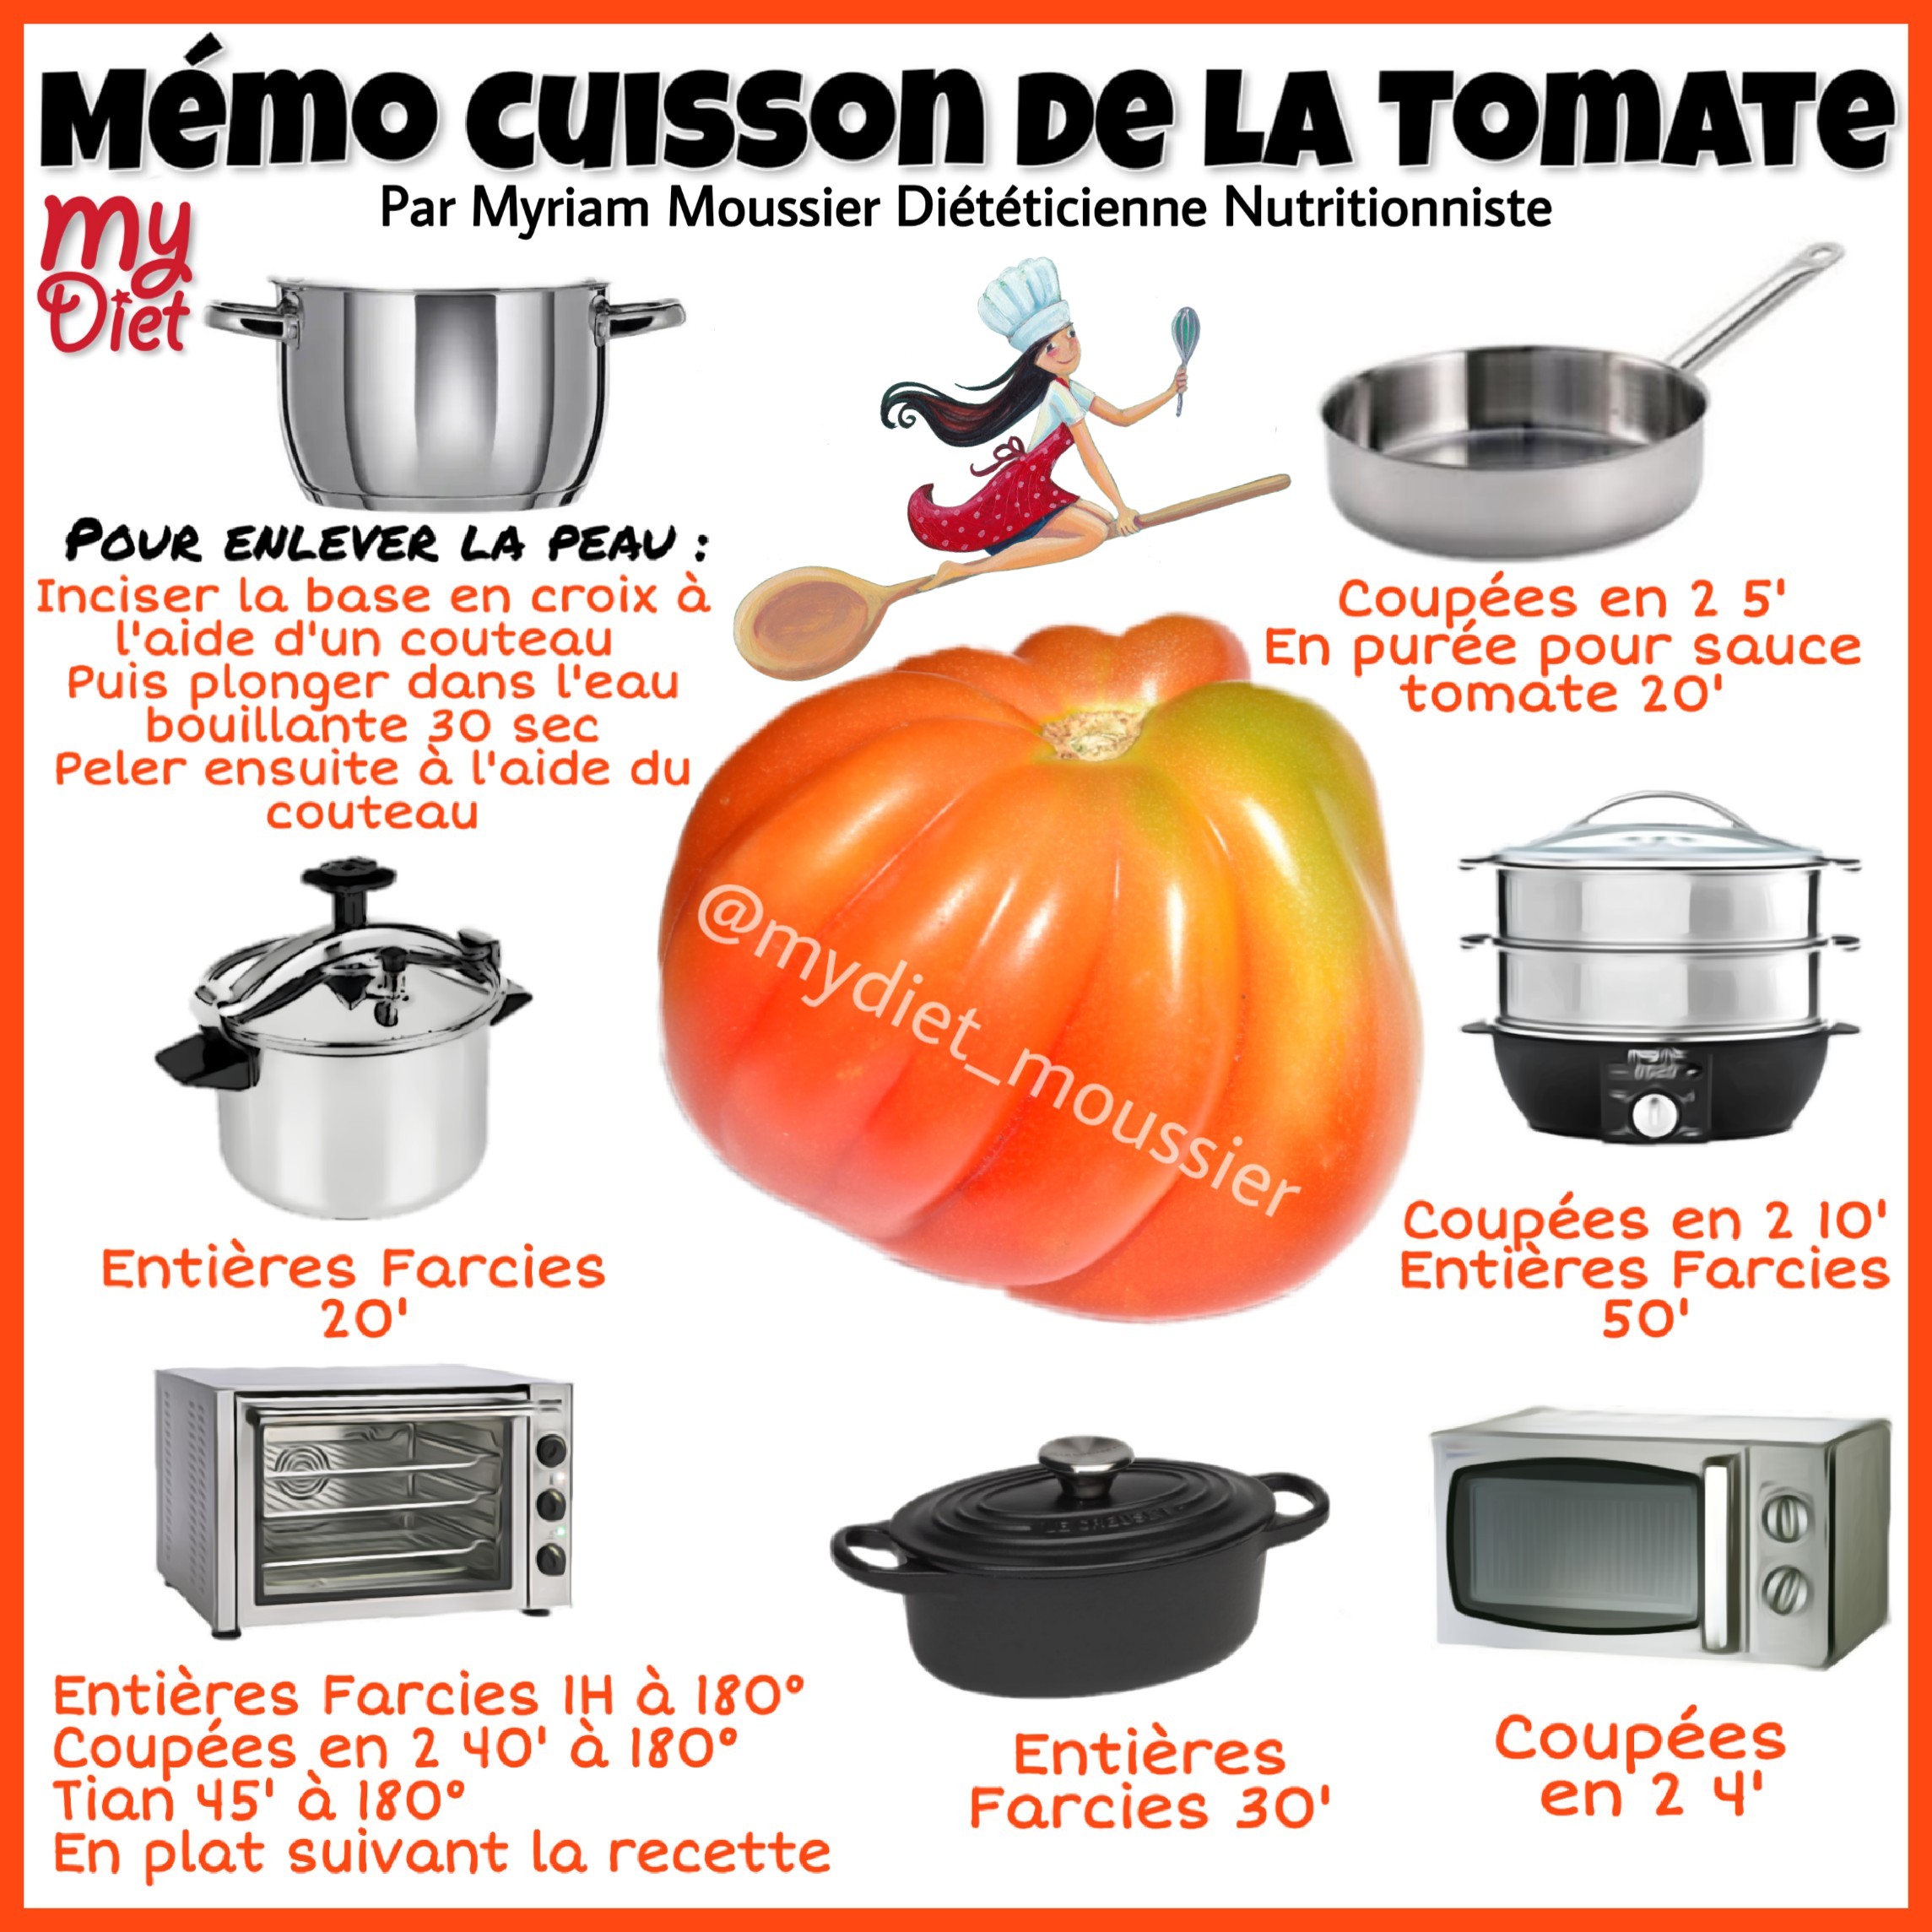 Memo cuisson de la tomate